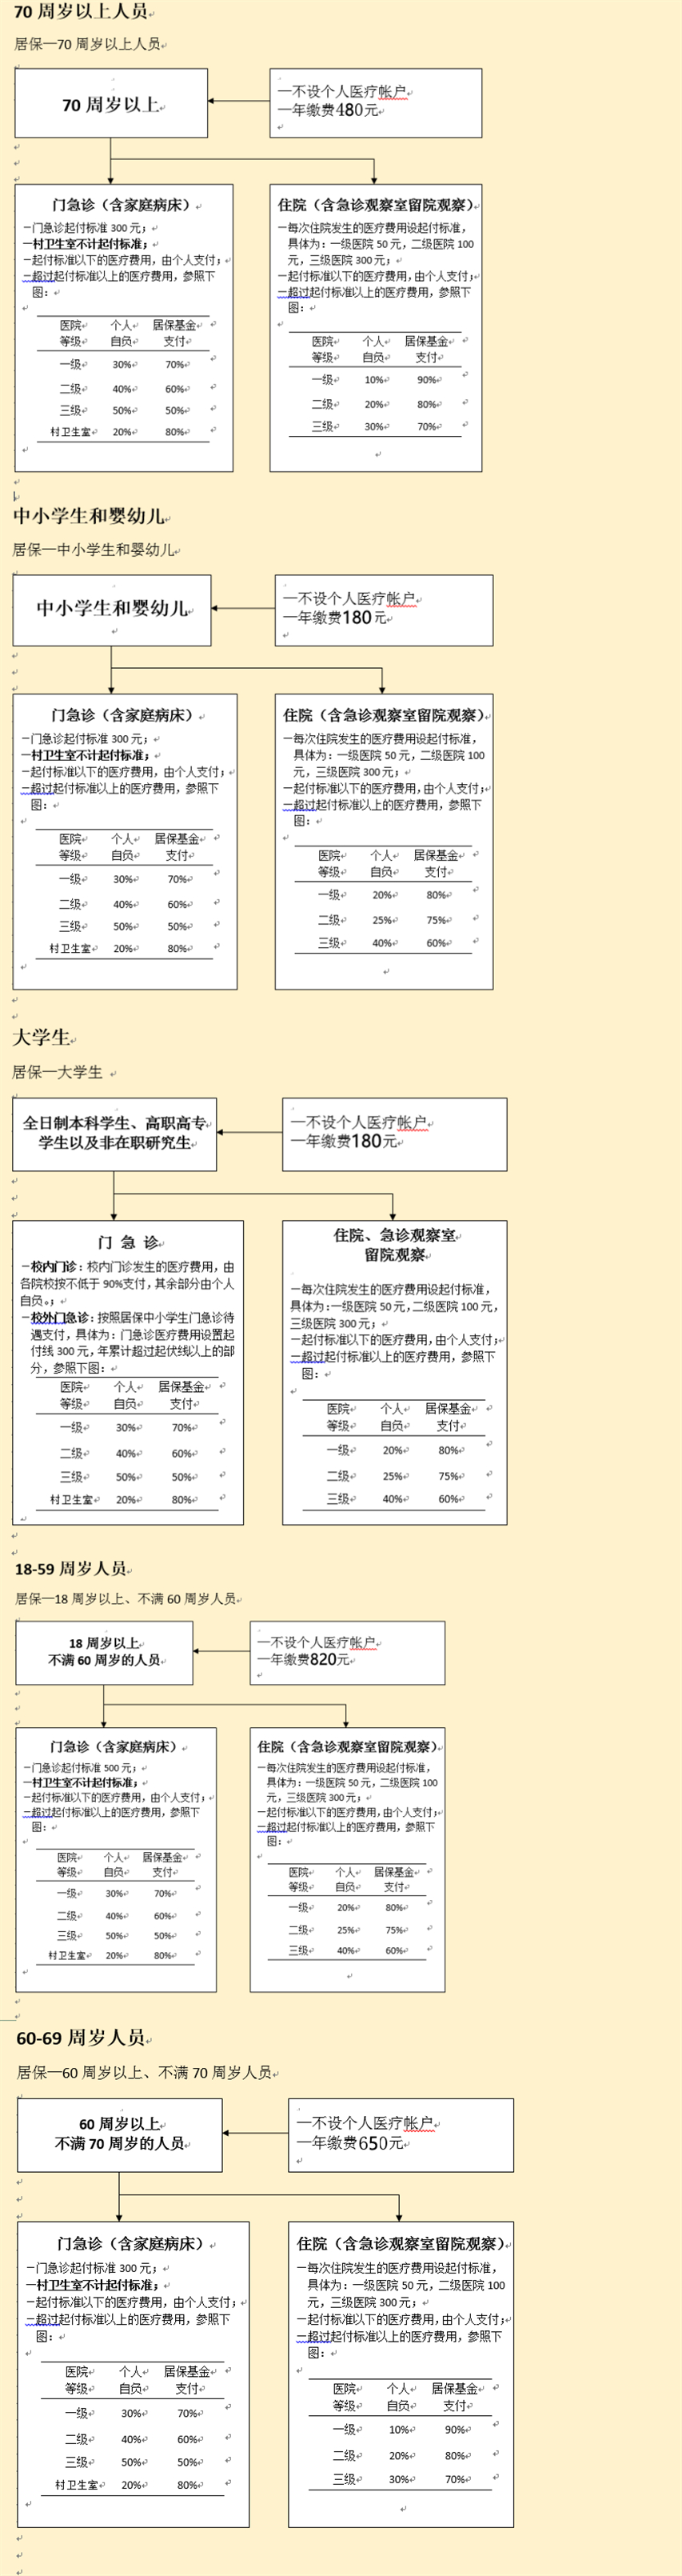 2022年9月上海社保之医保查询指南(待遇+定点医院+支付标准)